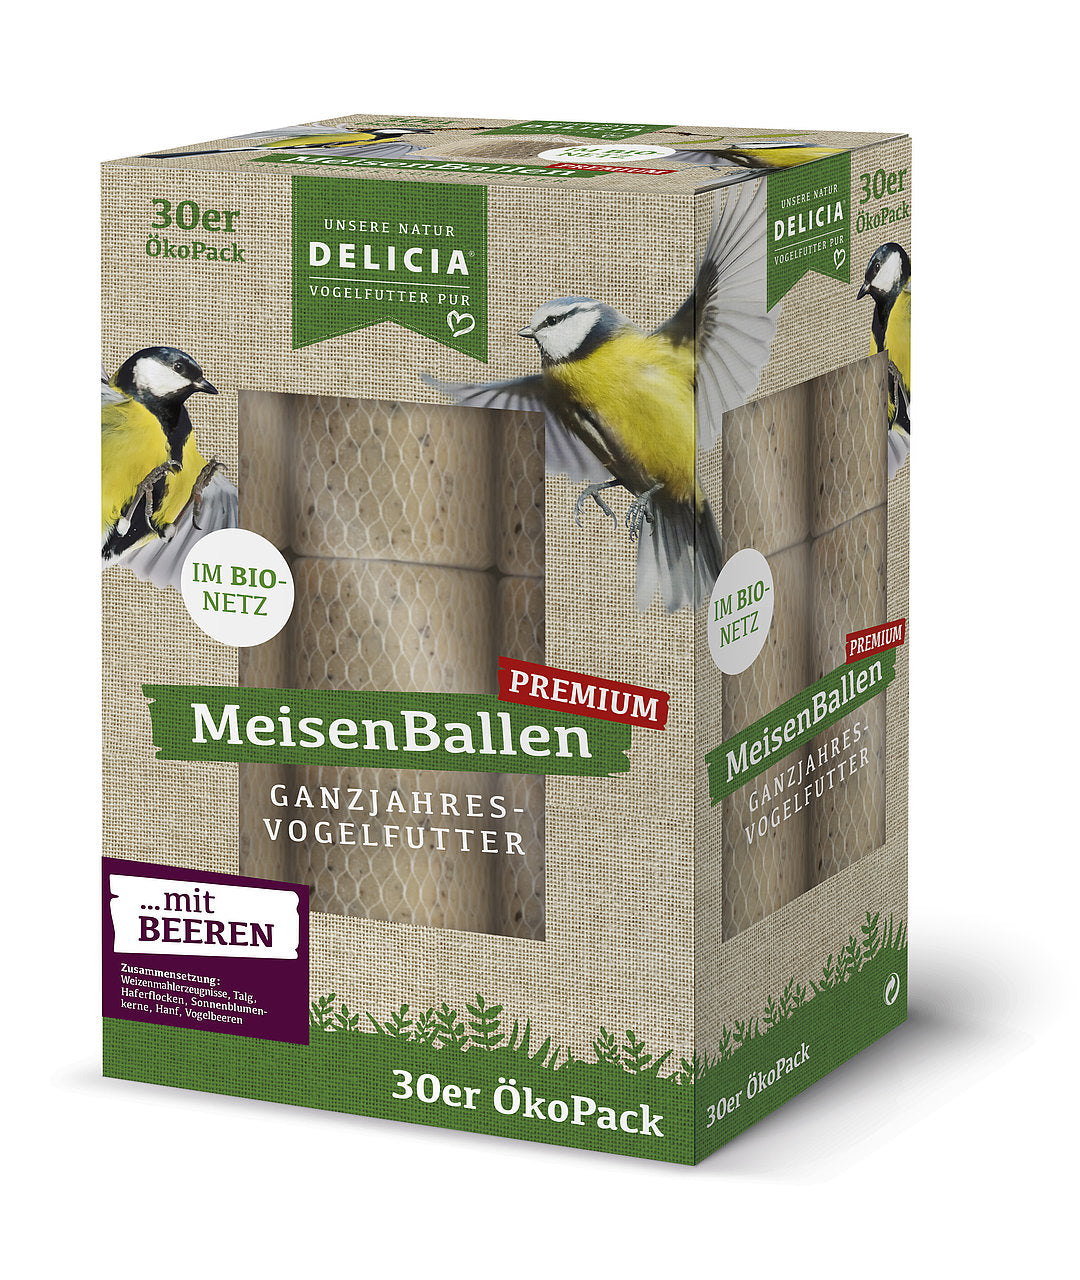 Delicia Meisenballen Picknic, mit Beeren, im Bio Netz, 30 Stück